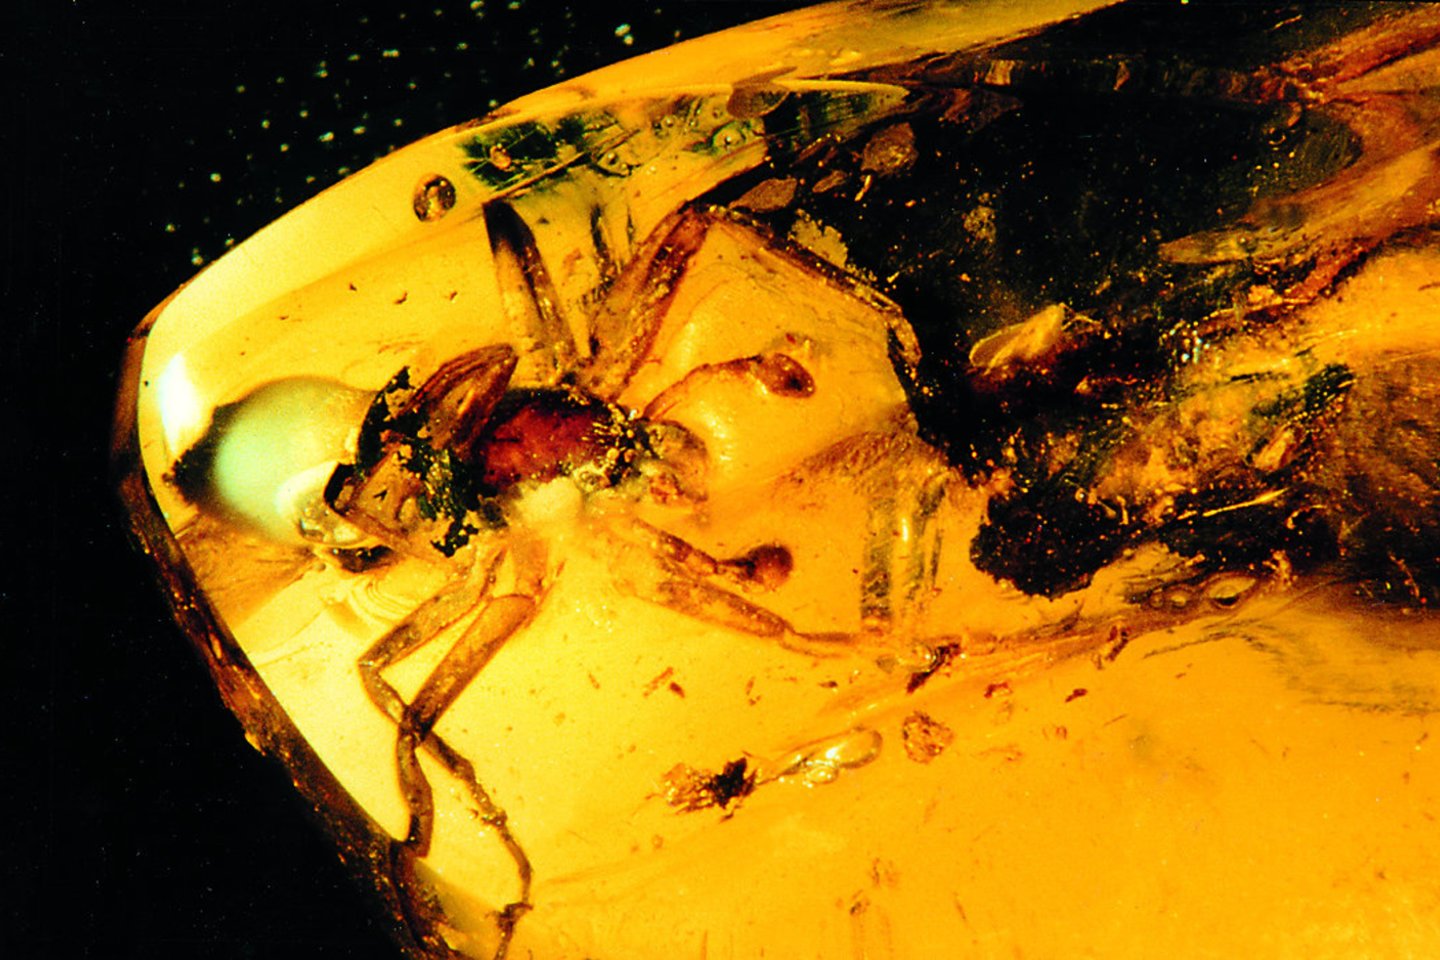 Prieš milijonus metų sakuose įklimpęs voras išgarsino K.Mizgirį. Vabzdžio vardas - Sosybius mizgirisi. <br>Mizgirių muziejaus nuotr. 